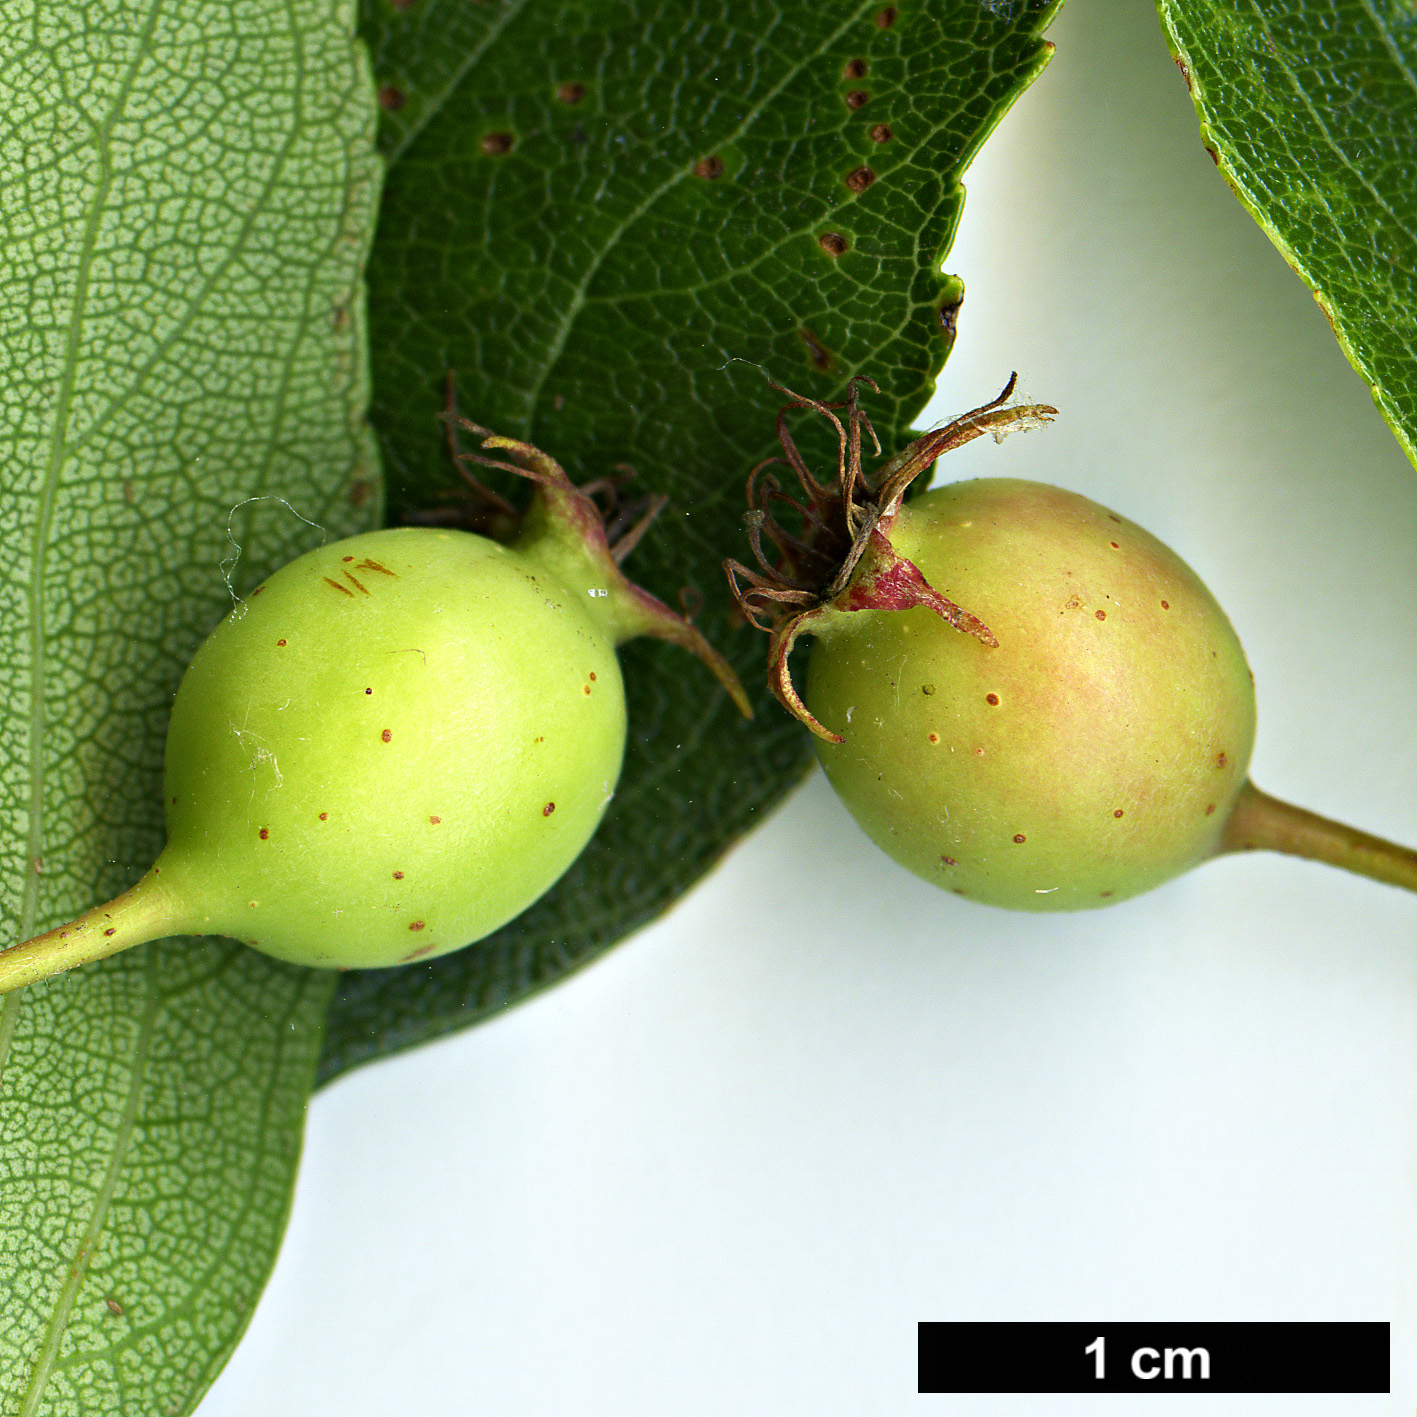 High resolution image: Family: Rosaceae - Genus: Crataegus - Taxon: crus-galli